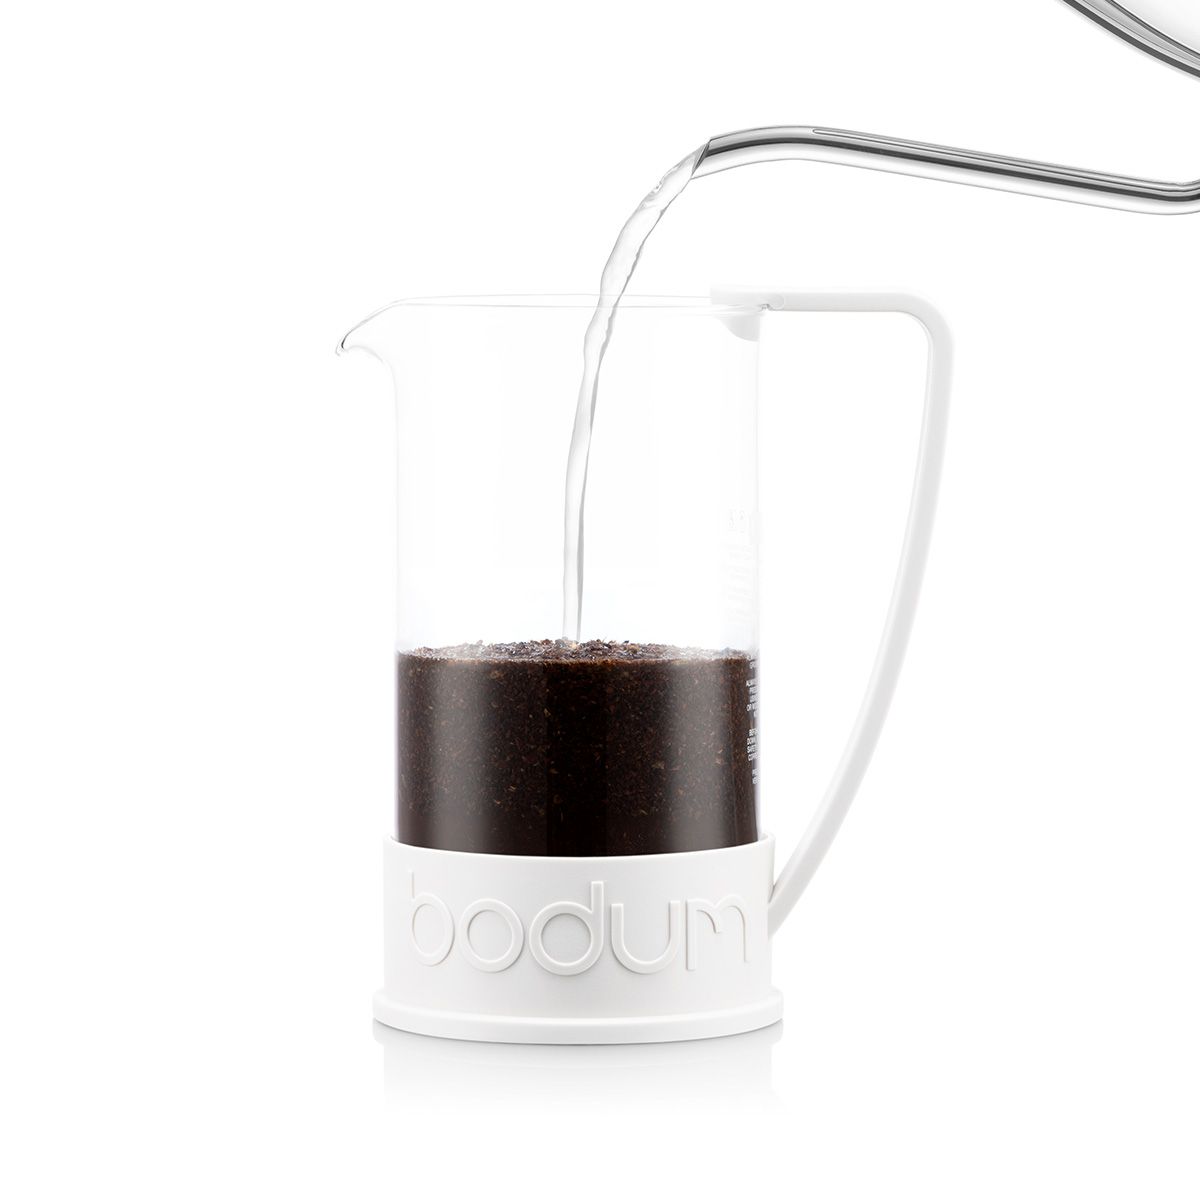 Bodum Brazil Coffee Maker Cream, 8 koppar